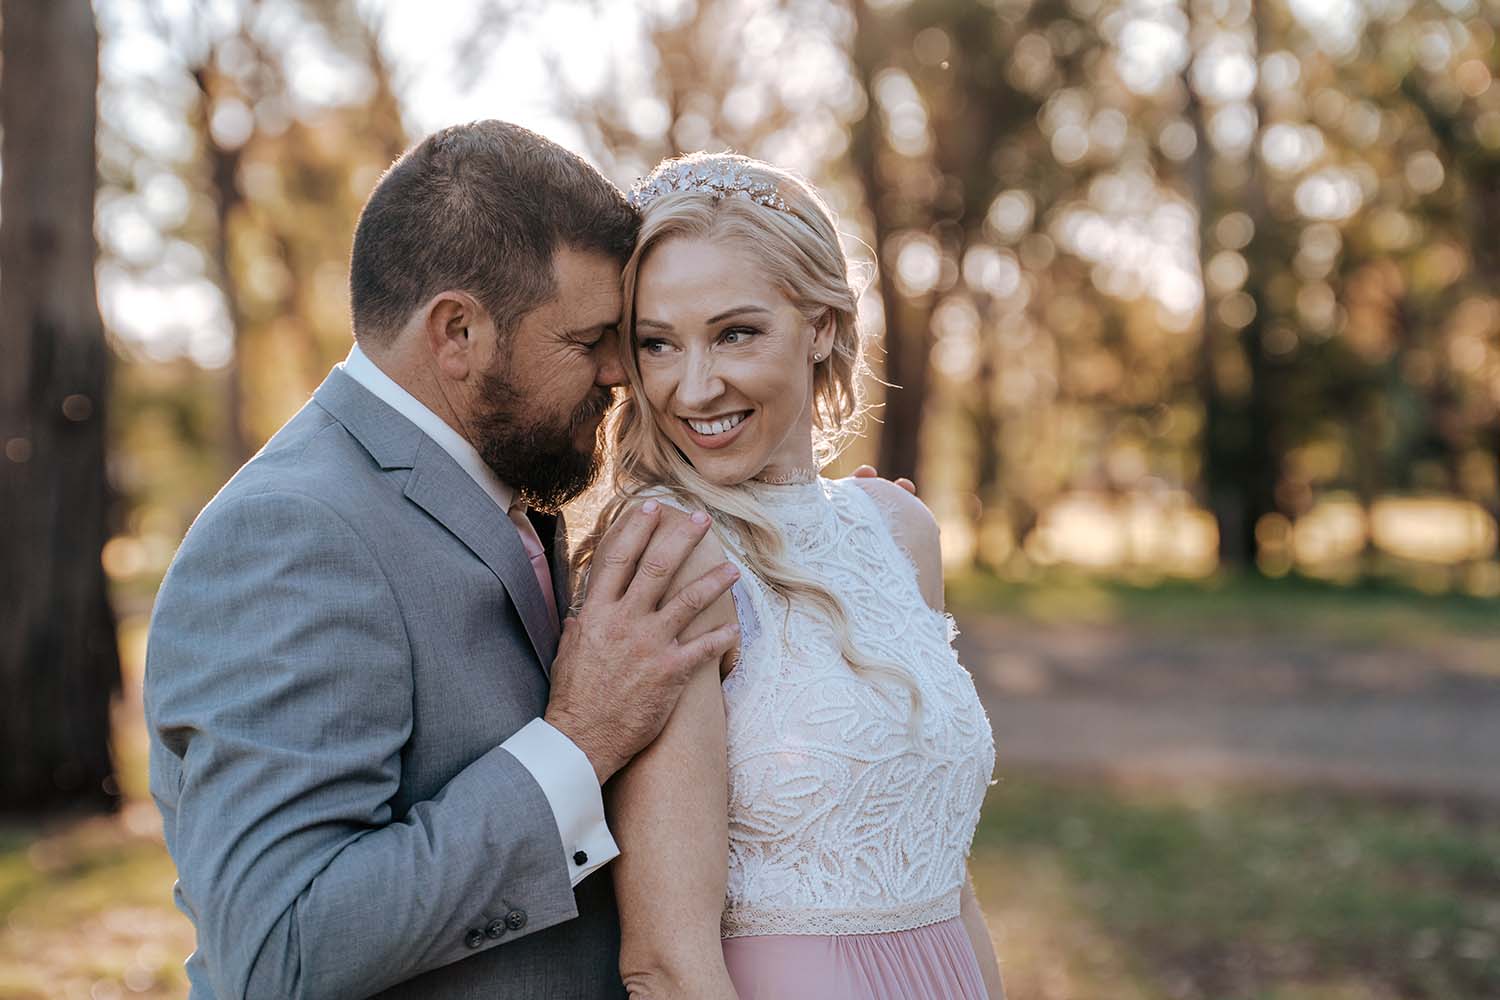 Wedding Photography - couple embracing